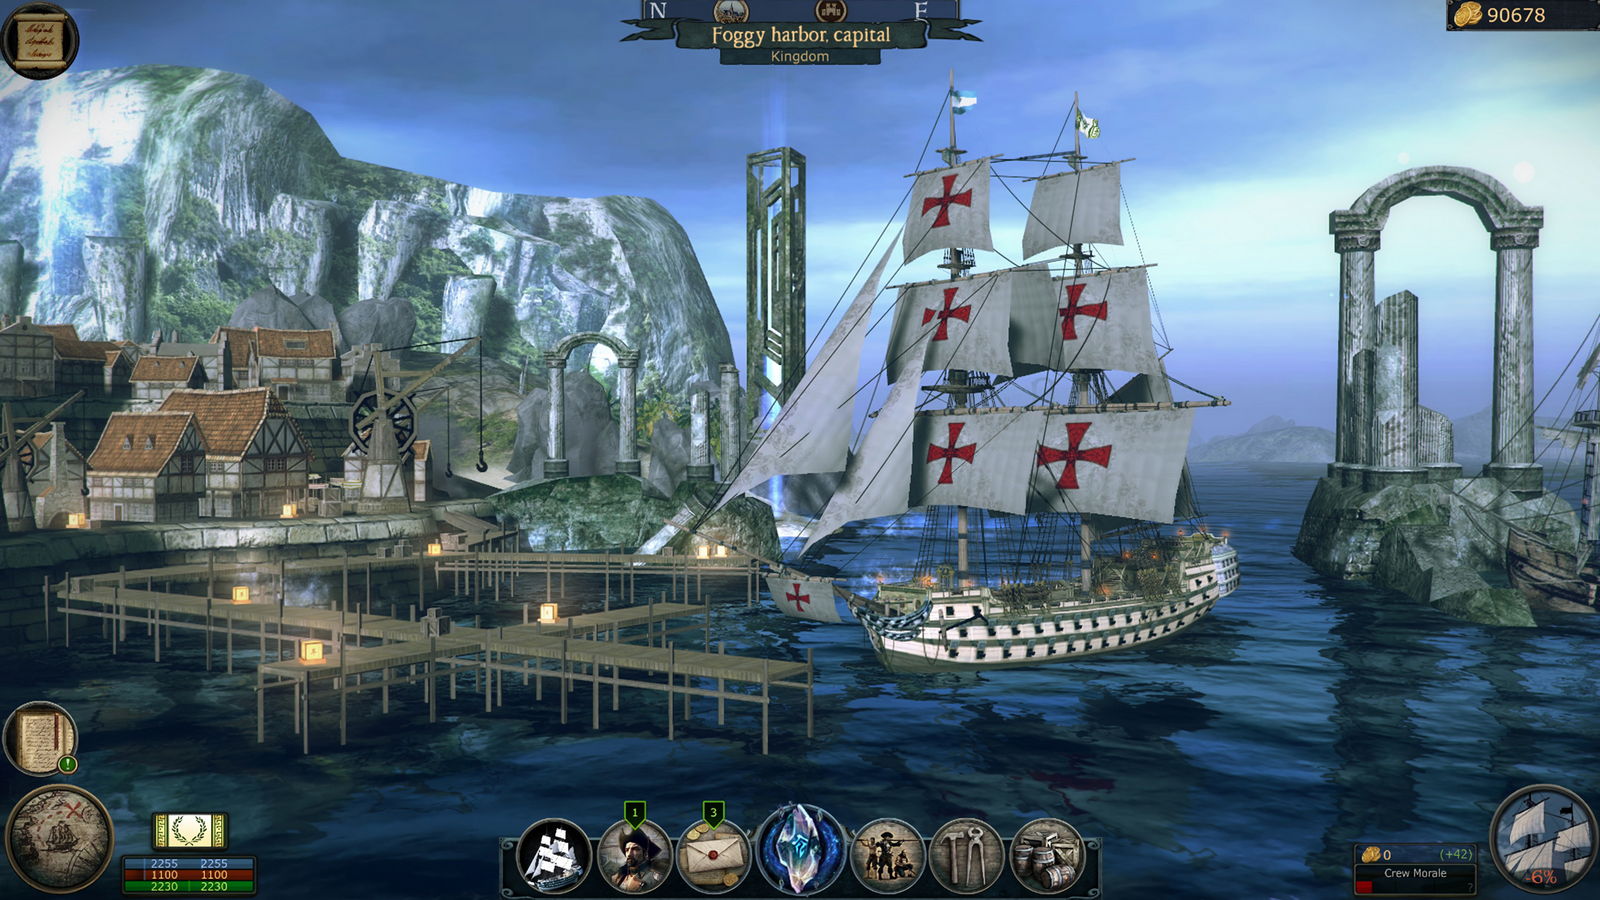 Игра пираты с открытым миром. Tempest игра. Tempest RPG. Tempest Pirate Action RPG карта. Pirates Flag－Caribbean Sea RPG.